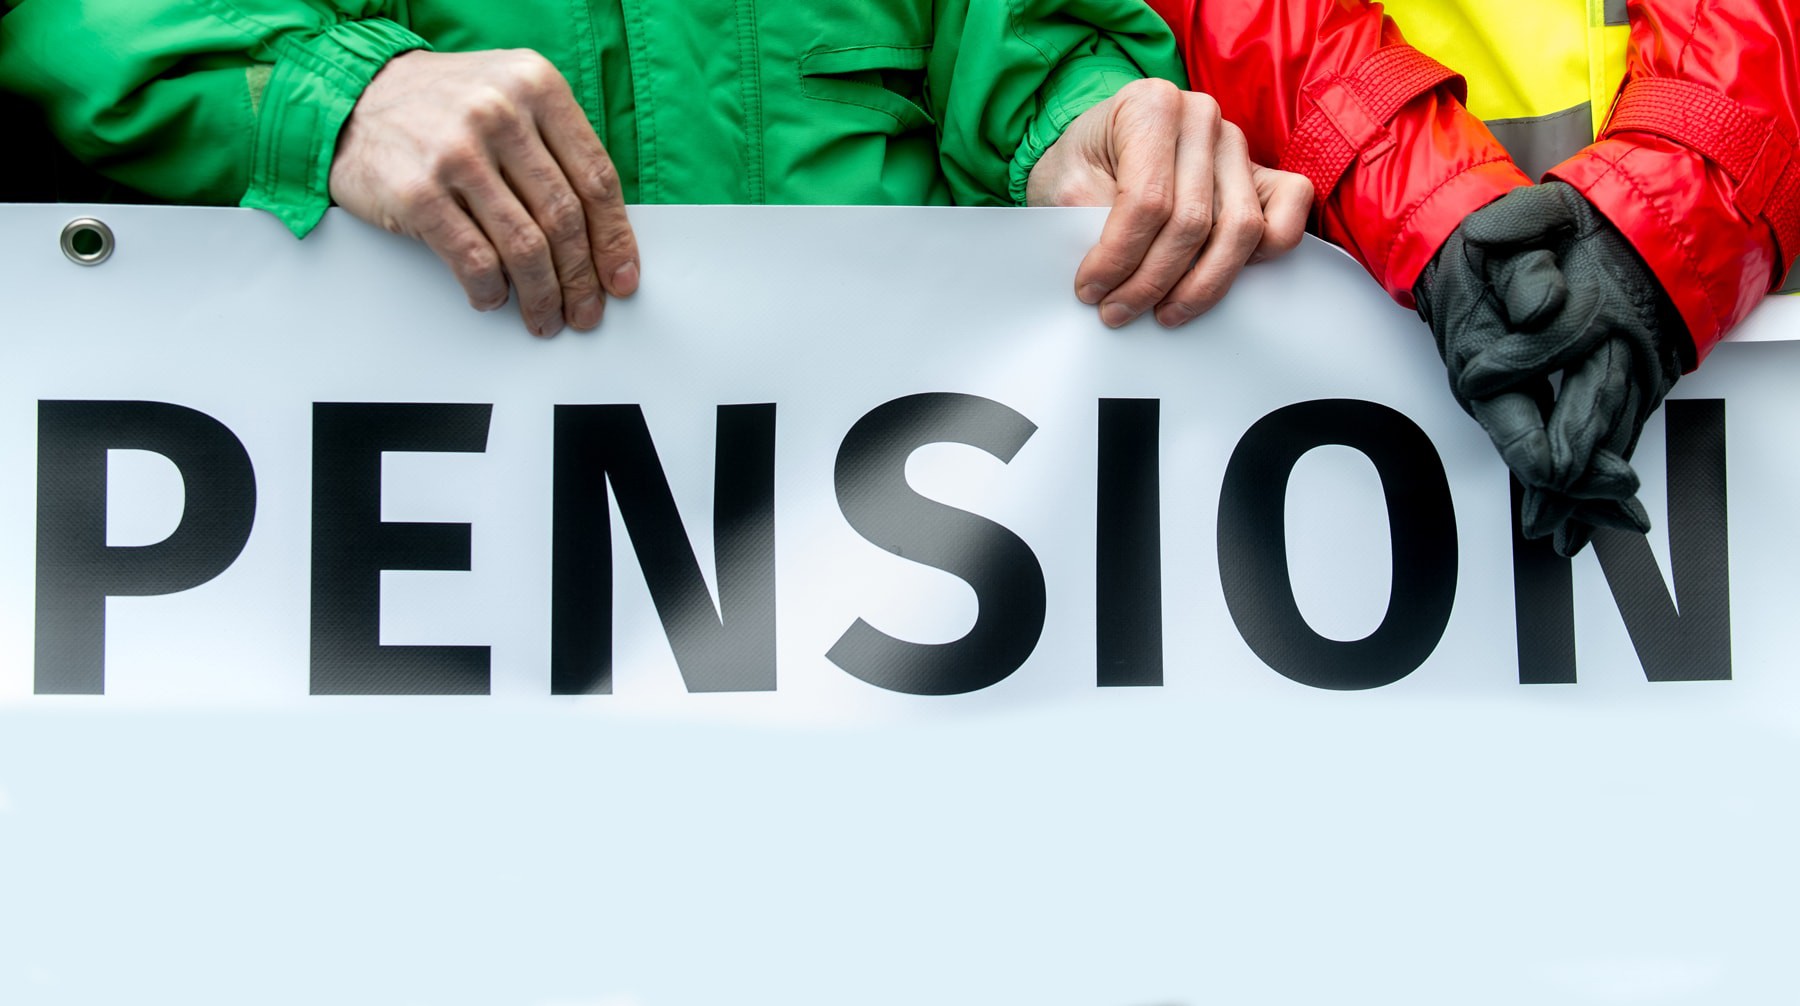 Dailystorm - Повышение пенсионного возраста могут отложить до 2030 года